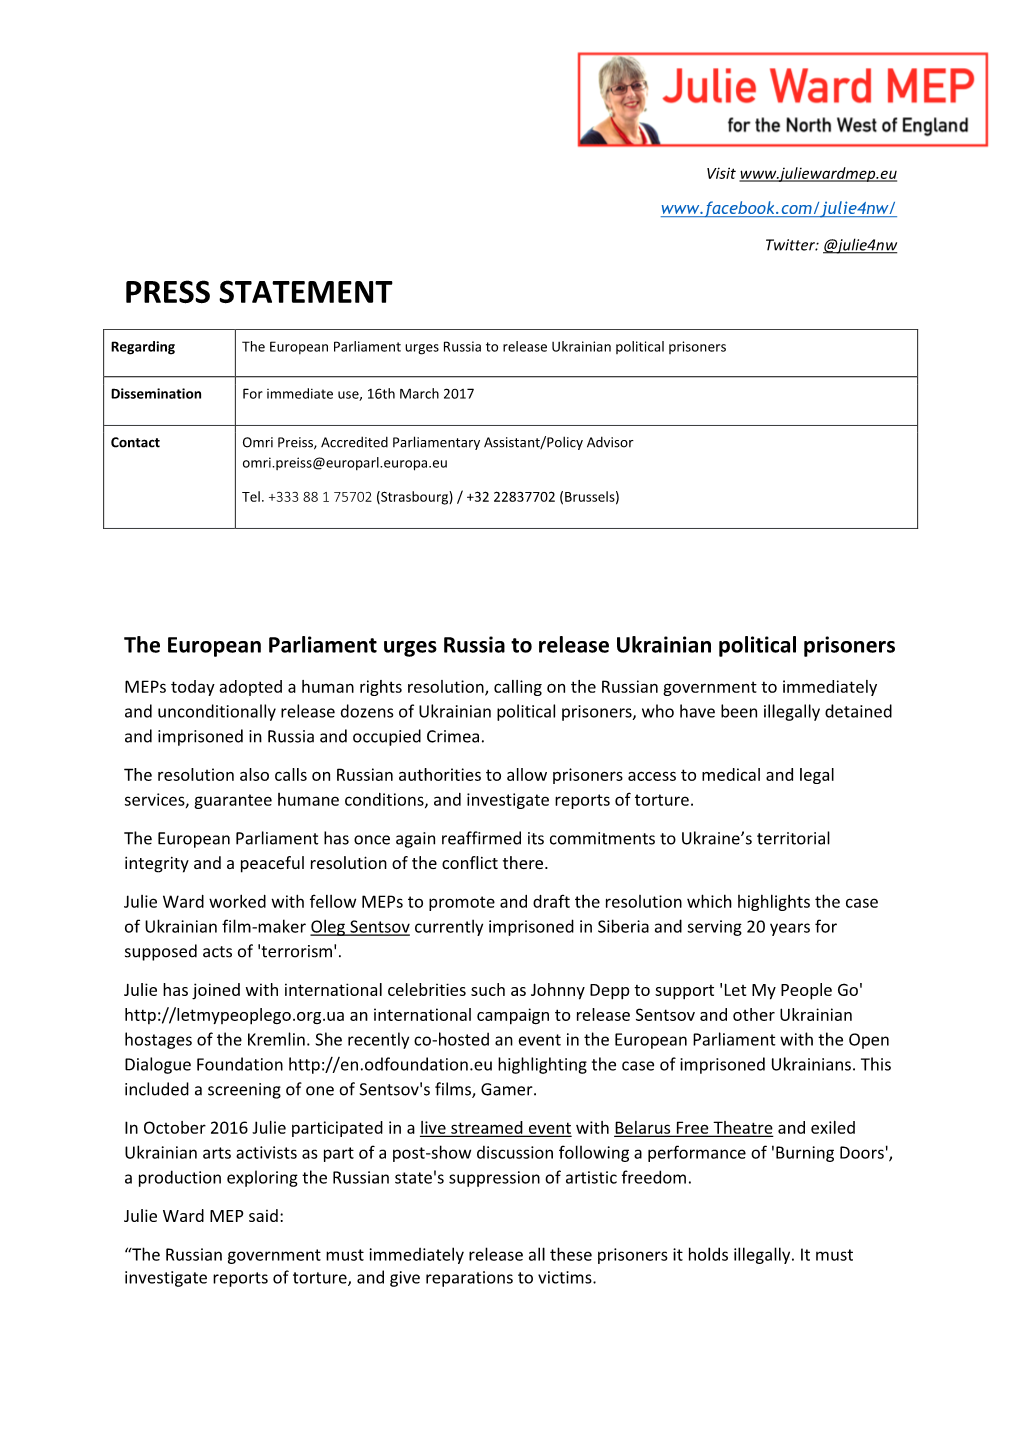 MEP Julie Ward Press Statement